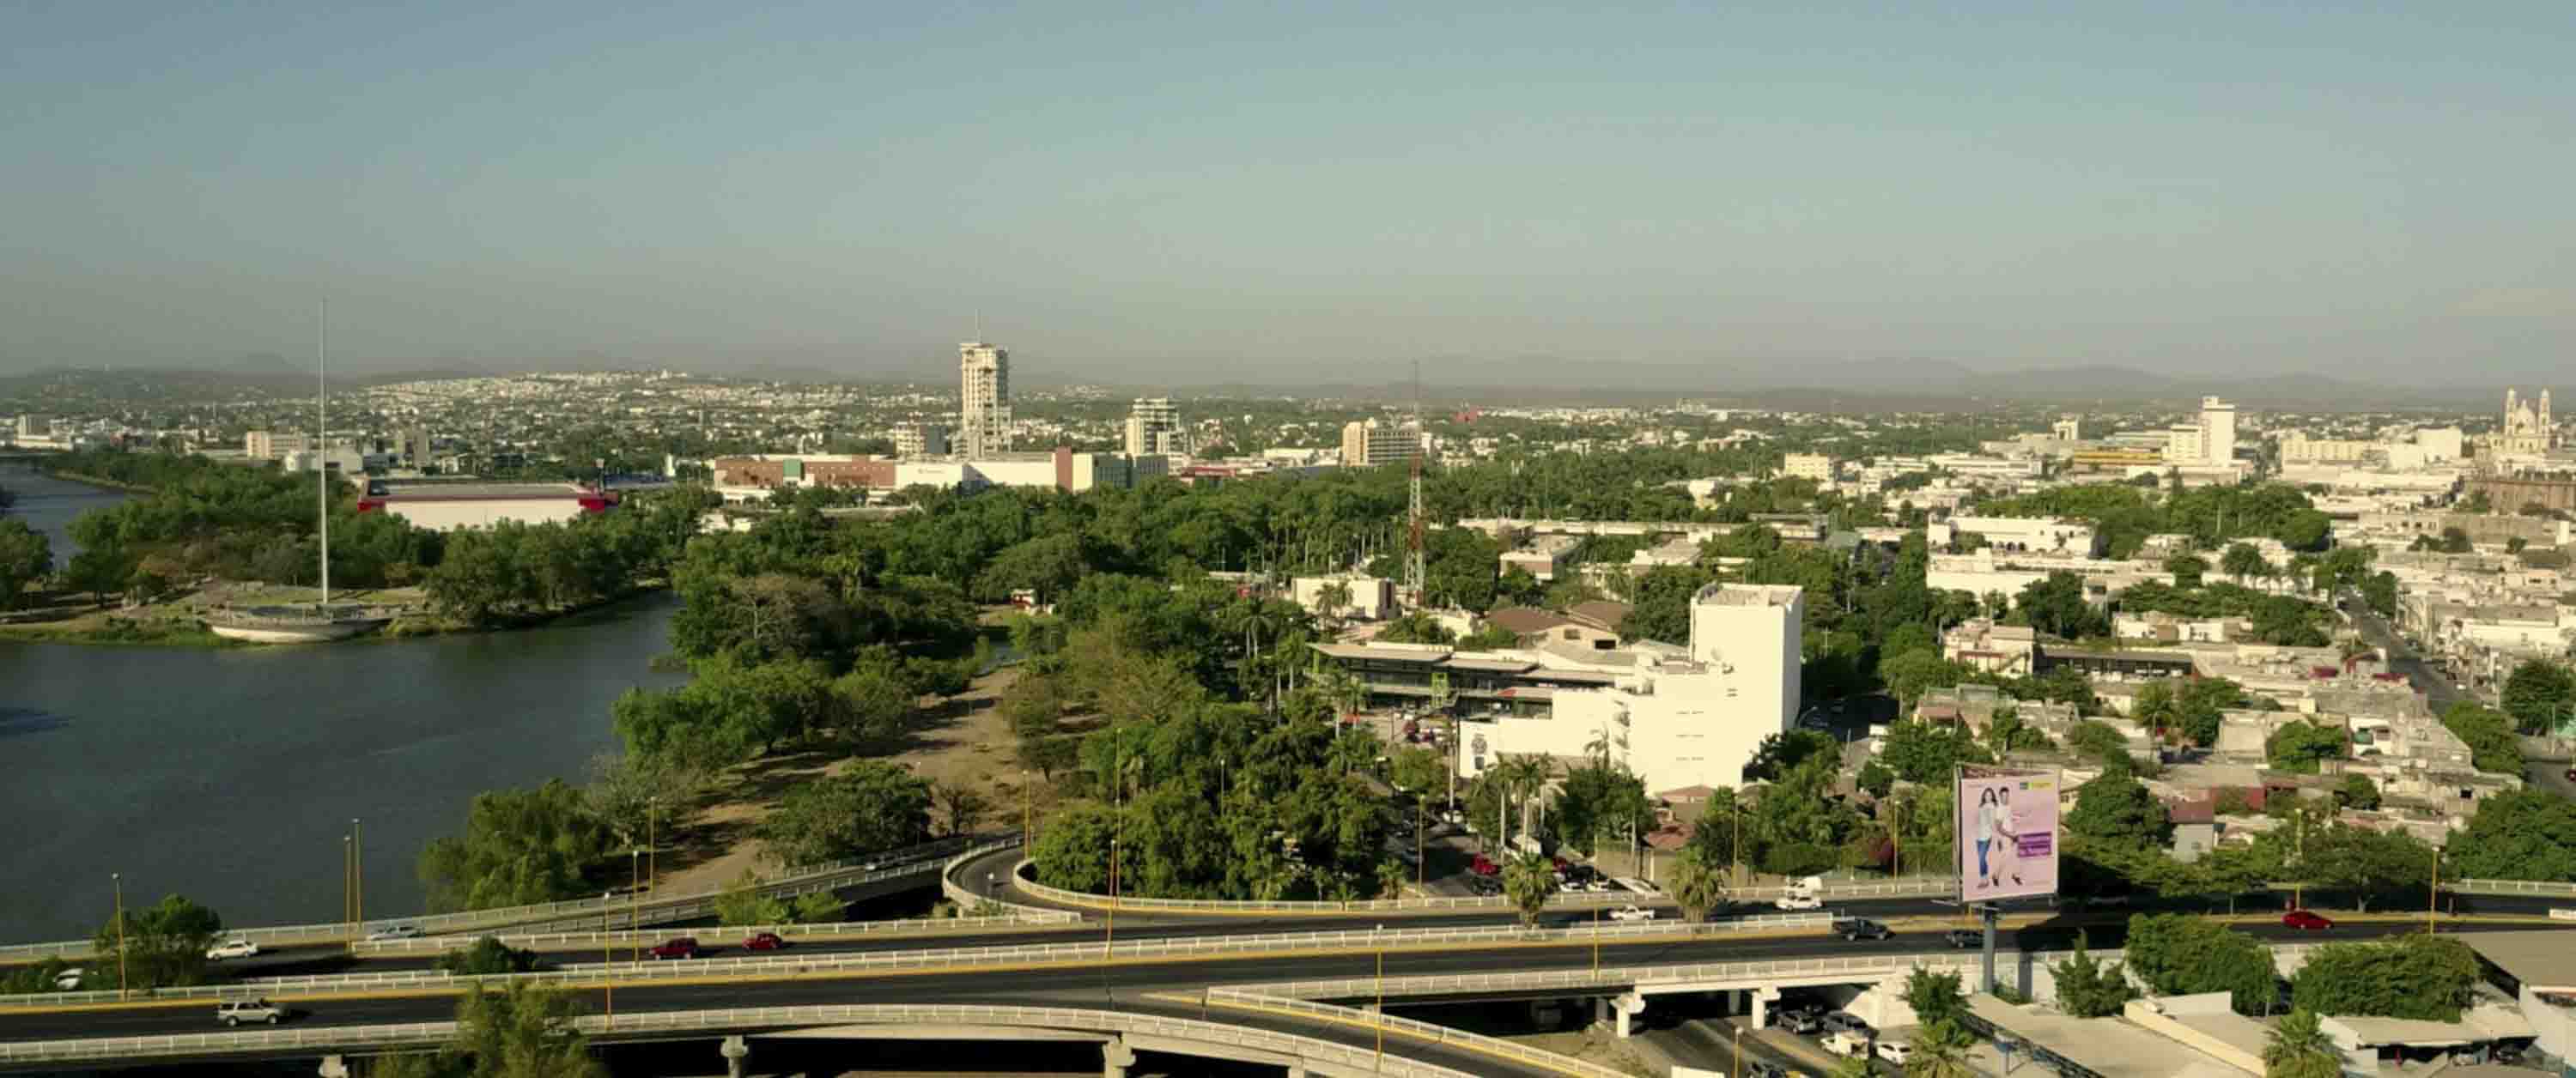 Cuadro de la película donde se muestra la ciudad de Culiacán, donde se desarrolla la trama.